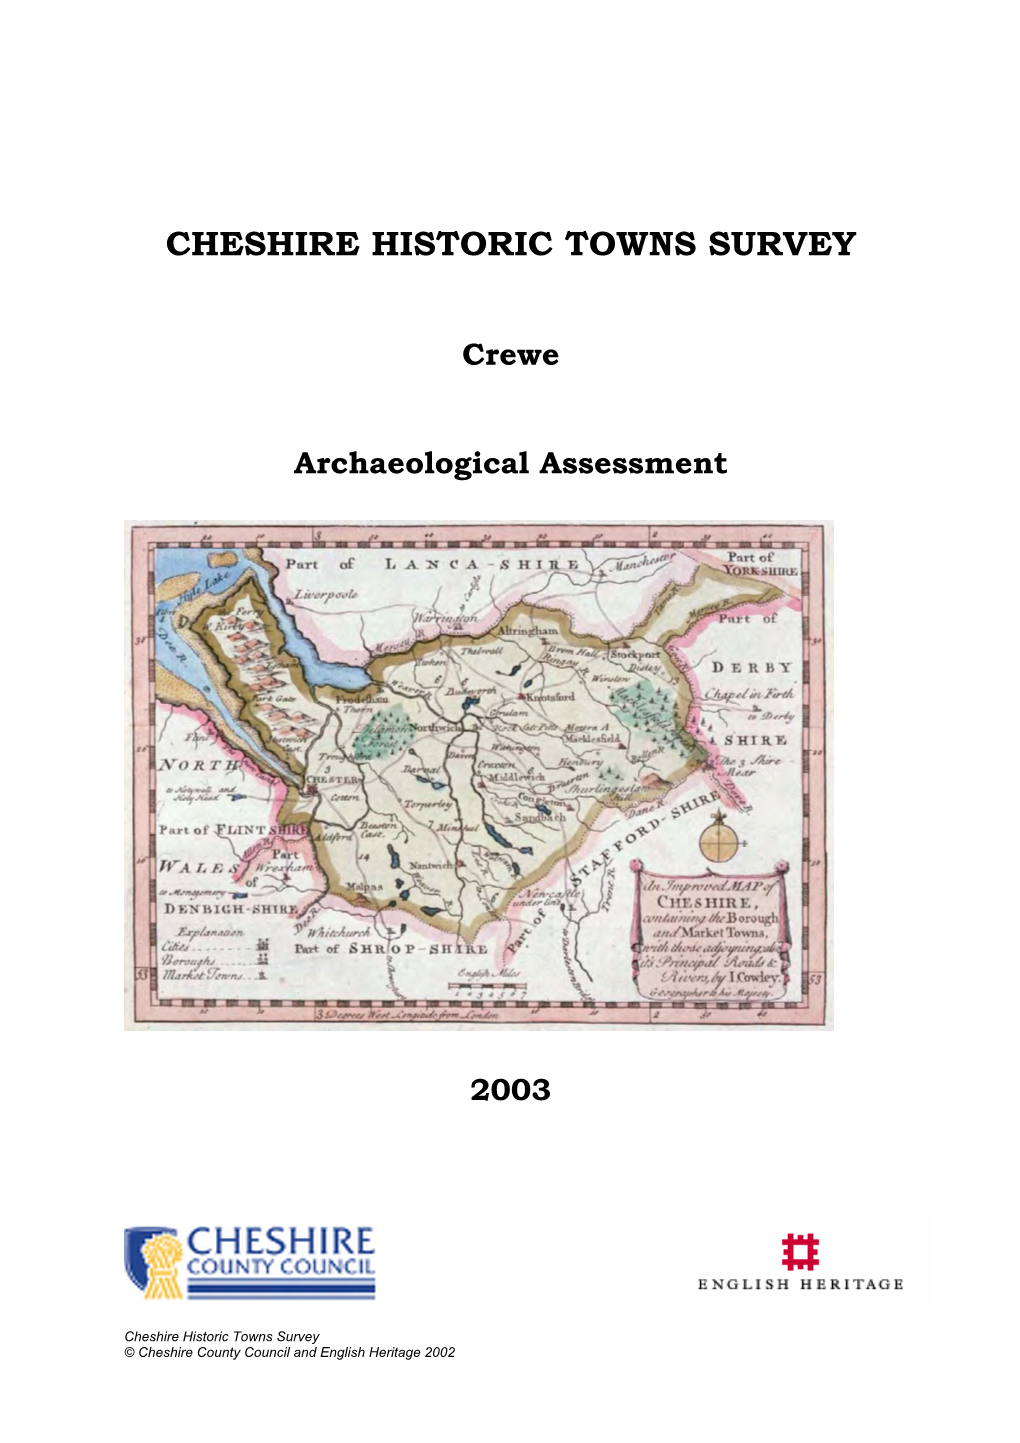 CREWE : Draft 2 Assessment Report 20:04:1998